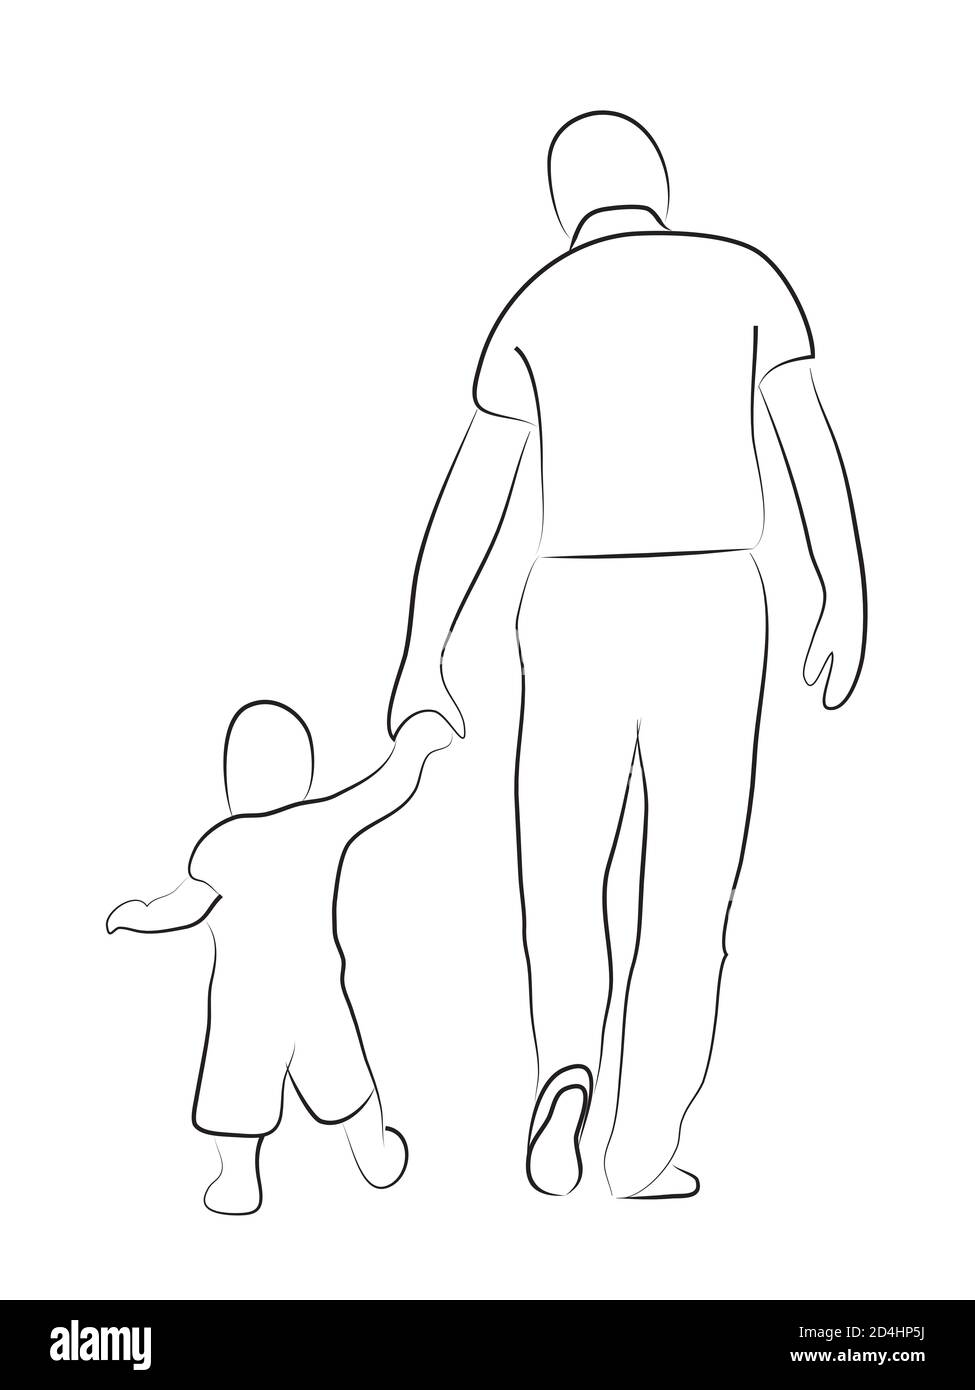 Disegno di schizzo lineare. Amorevole padre con illustrazione dell'arte della linea del bambino. Isolato su sfondo bianco. Foto Stock